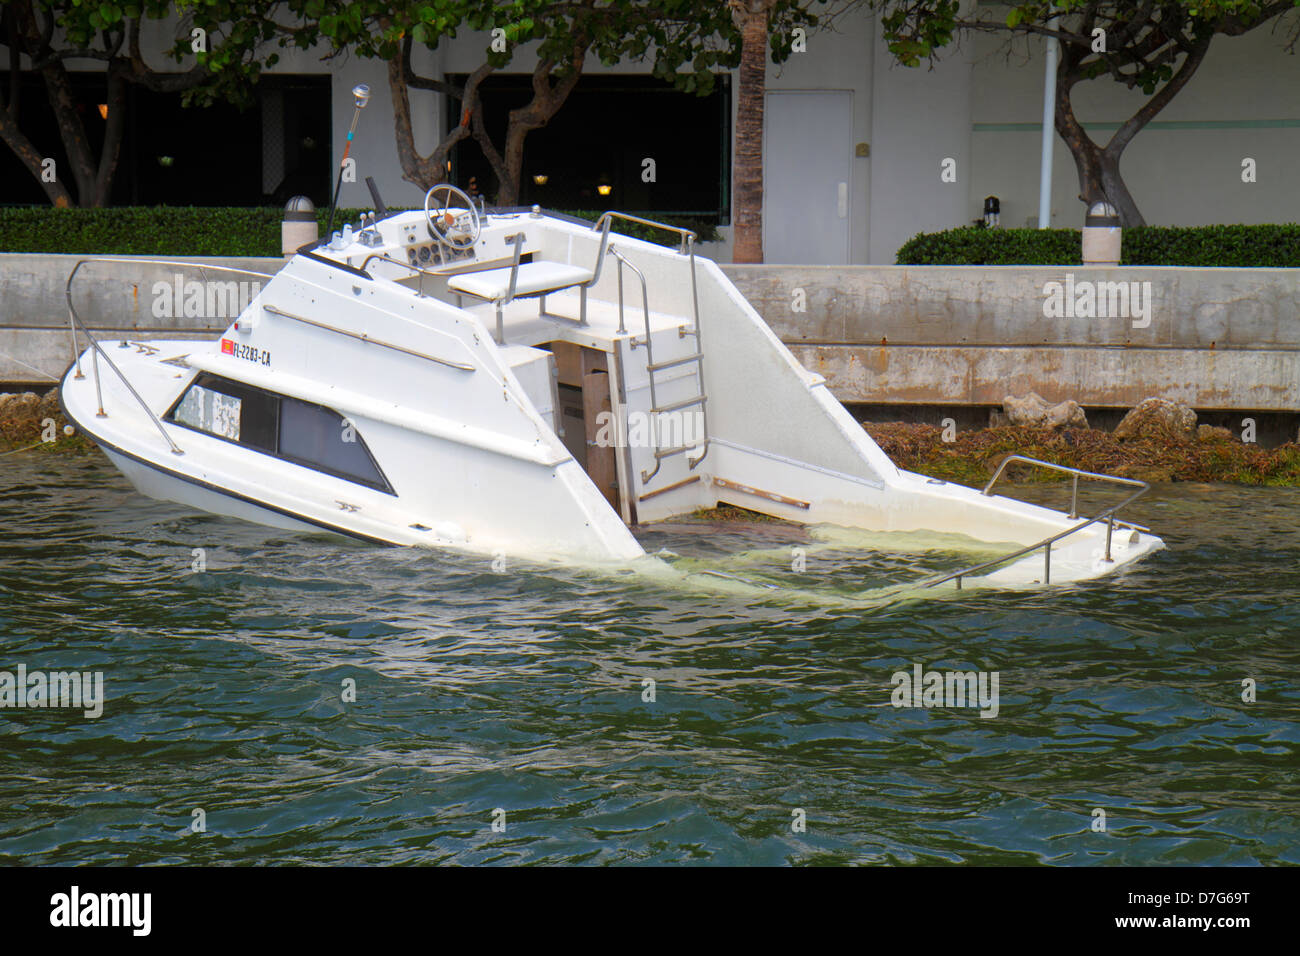 Miami Florida,Brickell Key,Biscayne Bay,bateau,yacht,coulé,submergé,eau,FL120905048 Banque D'Images